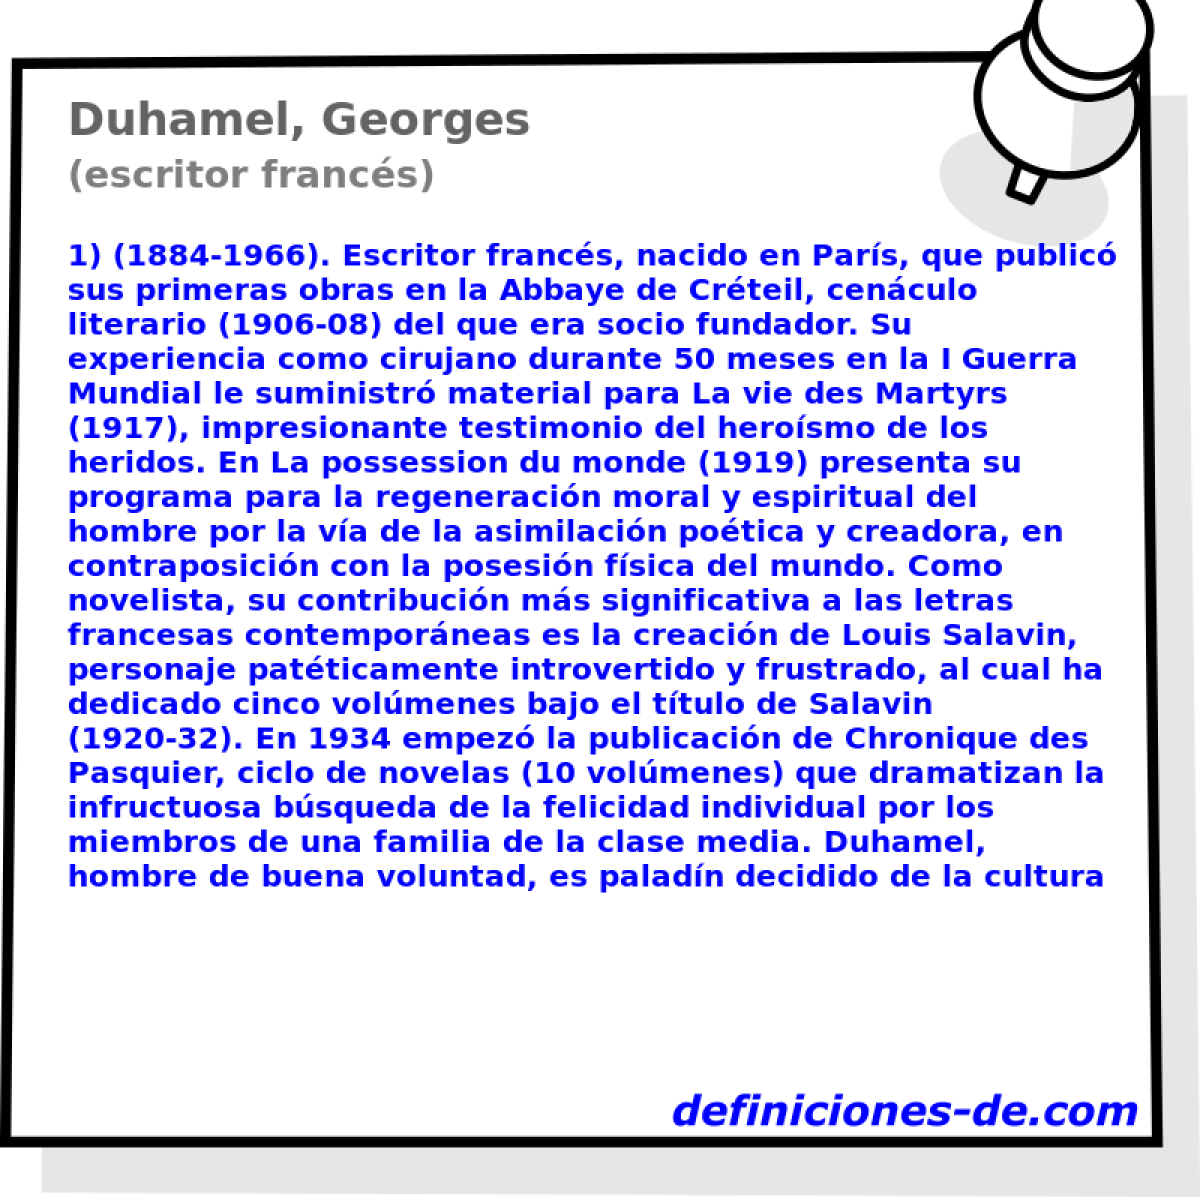 Duhamel, Georges (escritor francs)